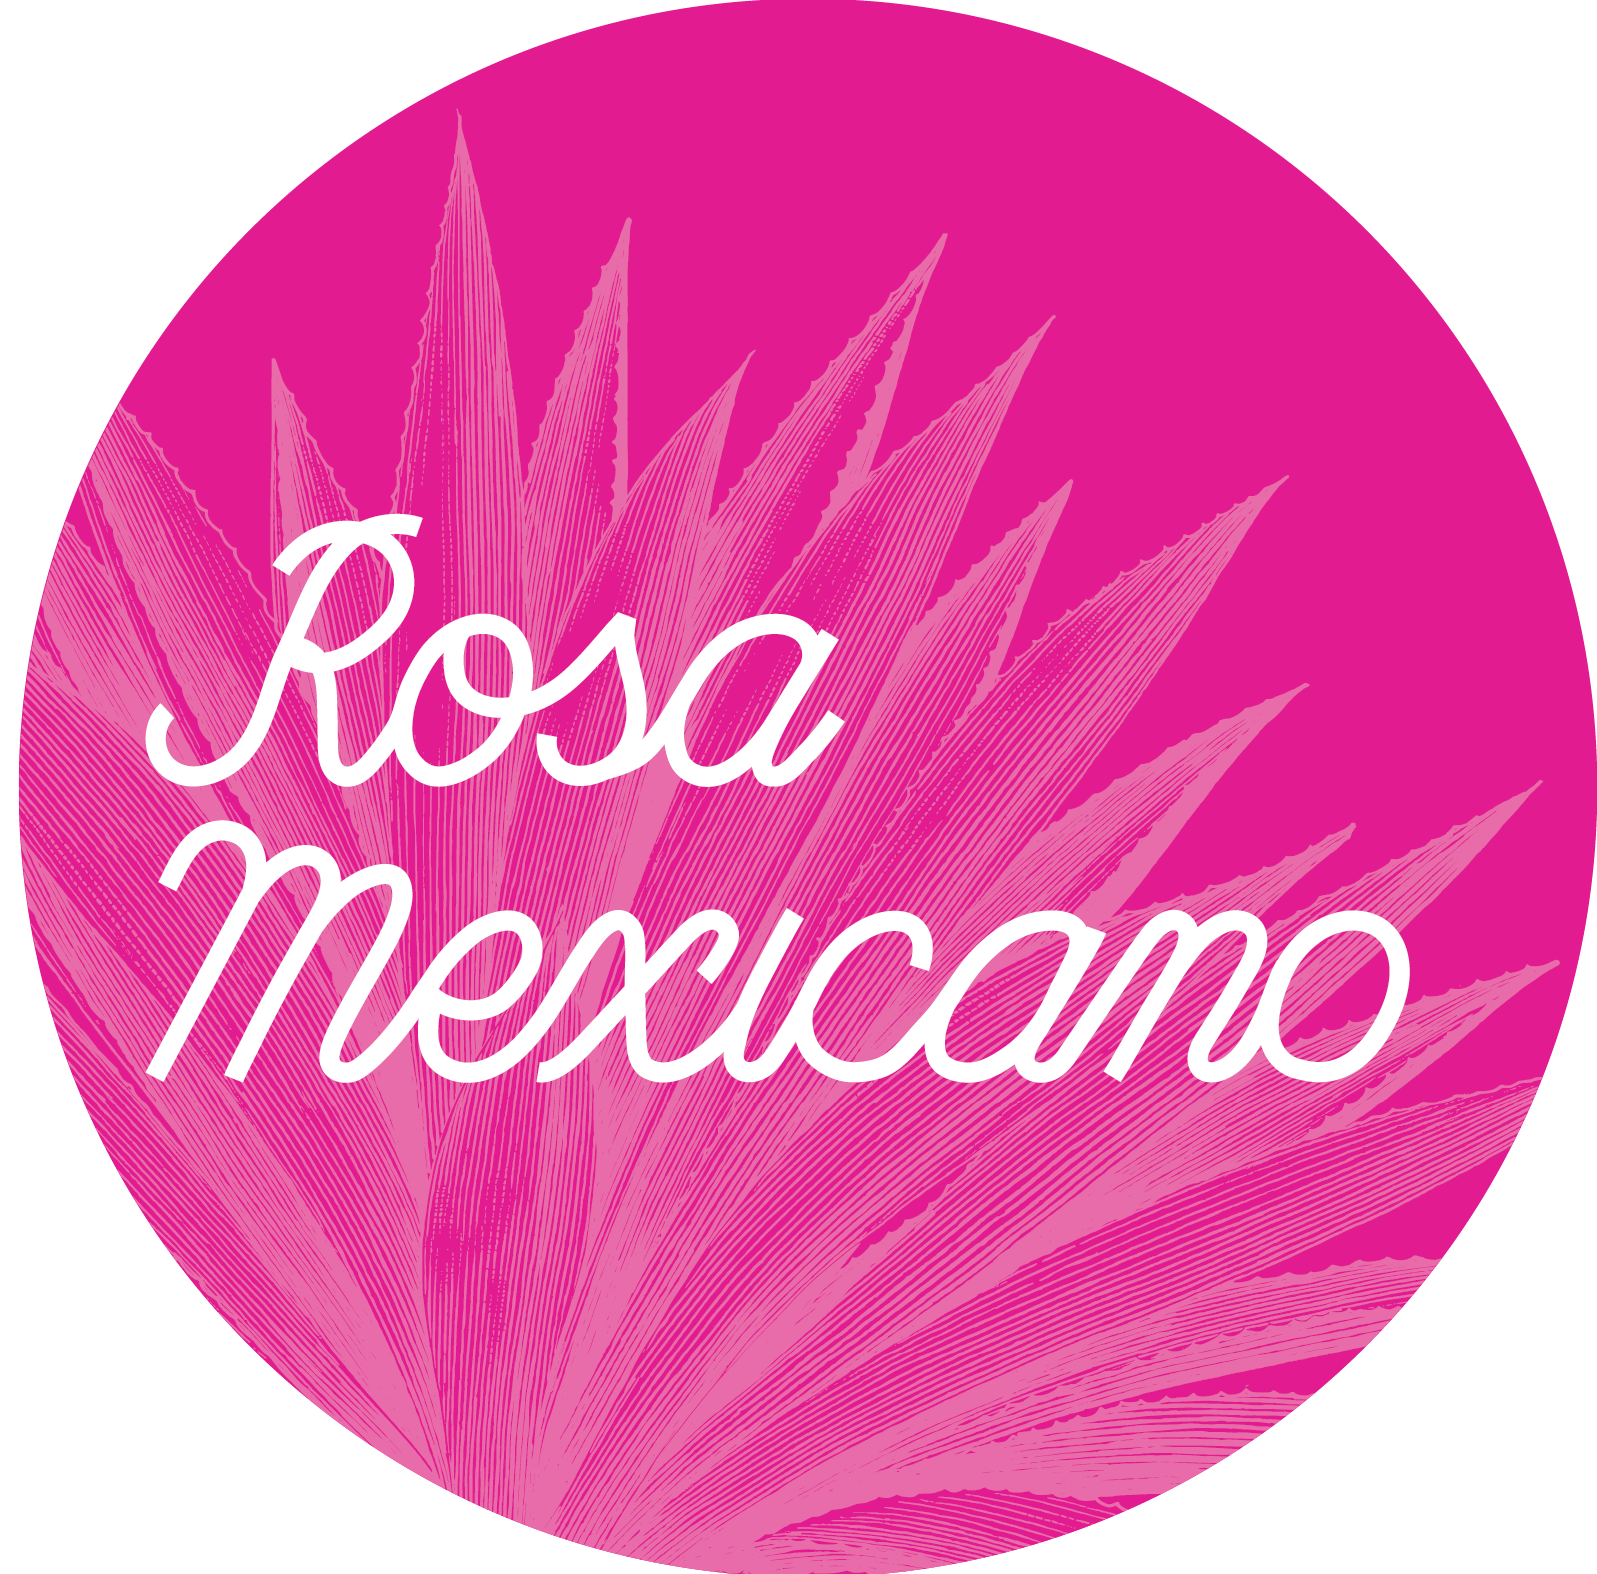 Rosa Mexicano logo.